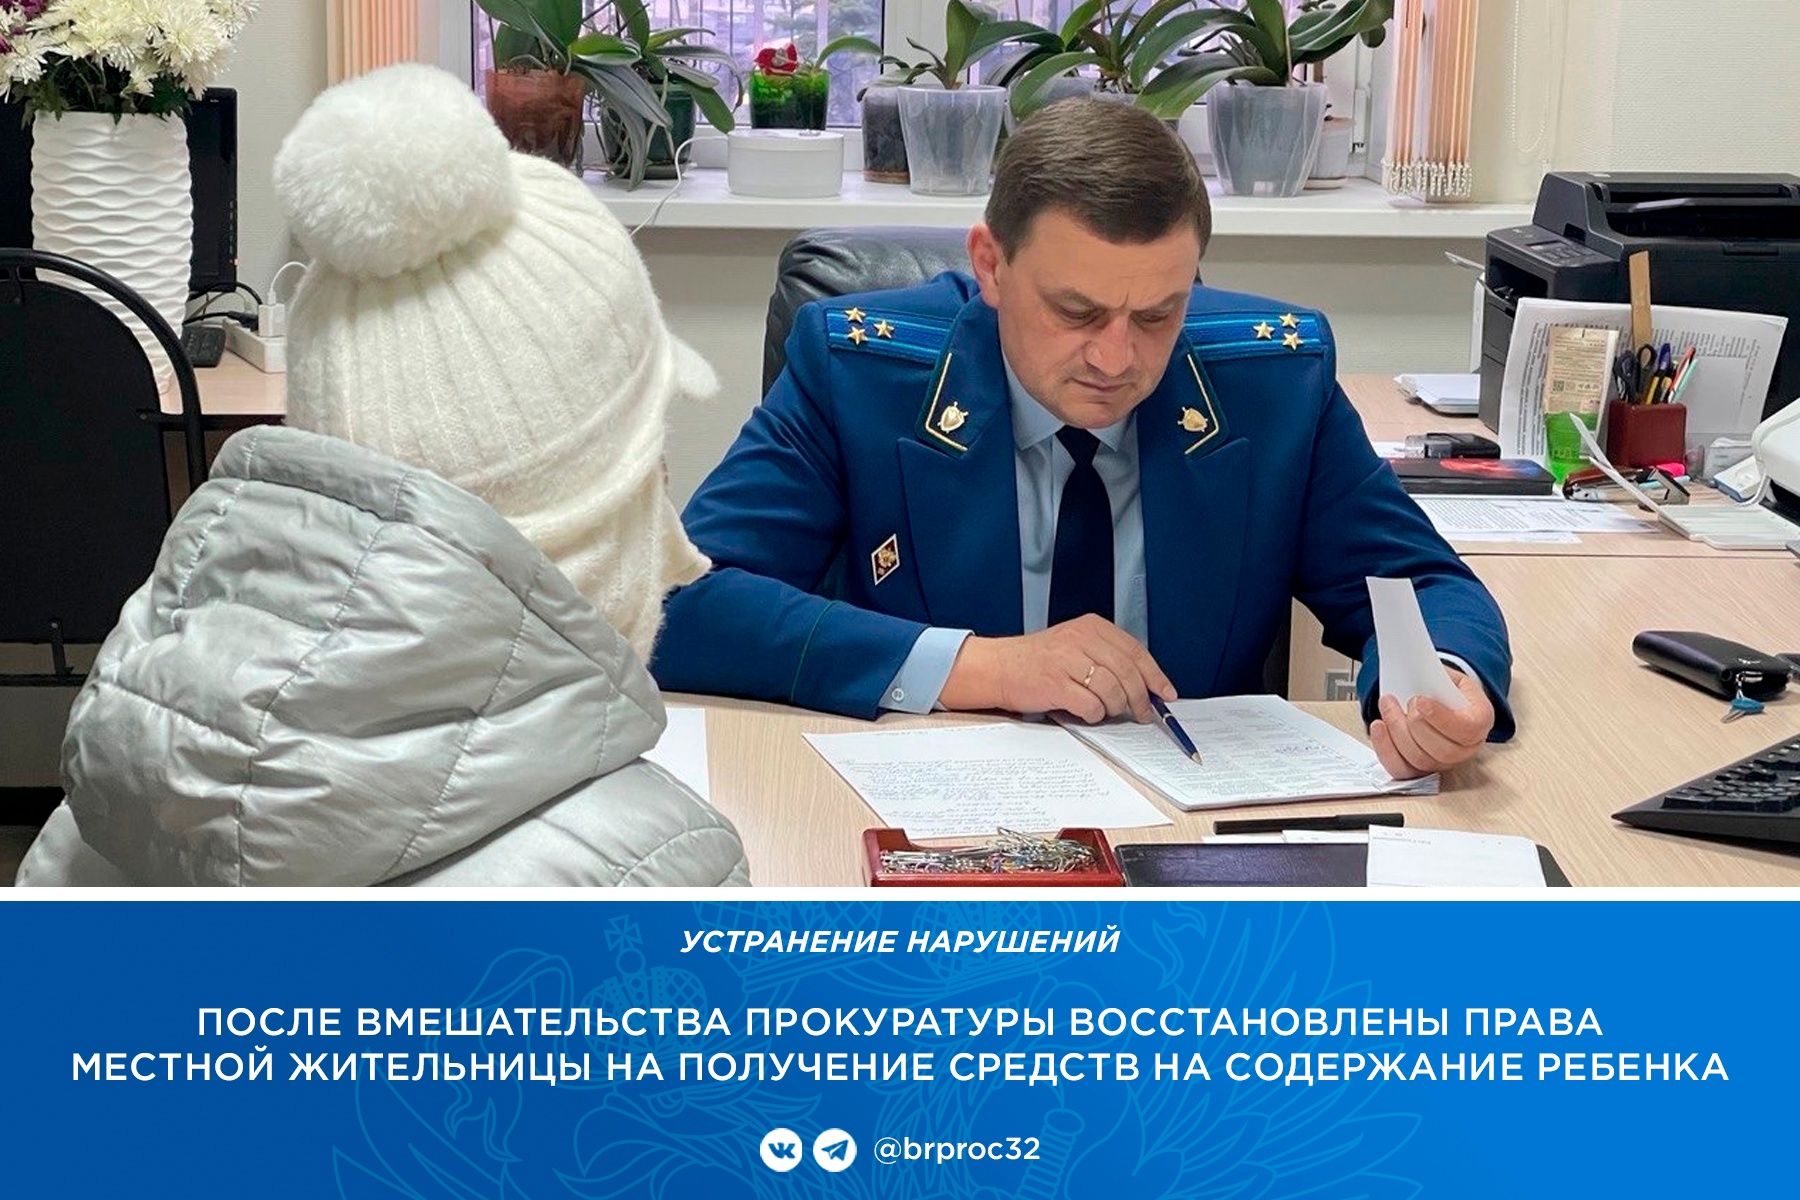 В Брянске по требованию прокурора алиментщик выплатил 539 тысяч рублей долга